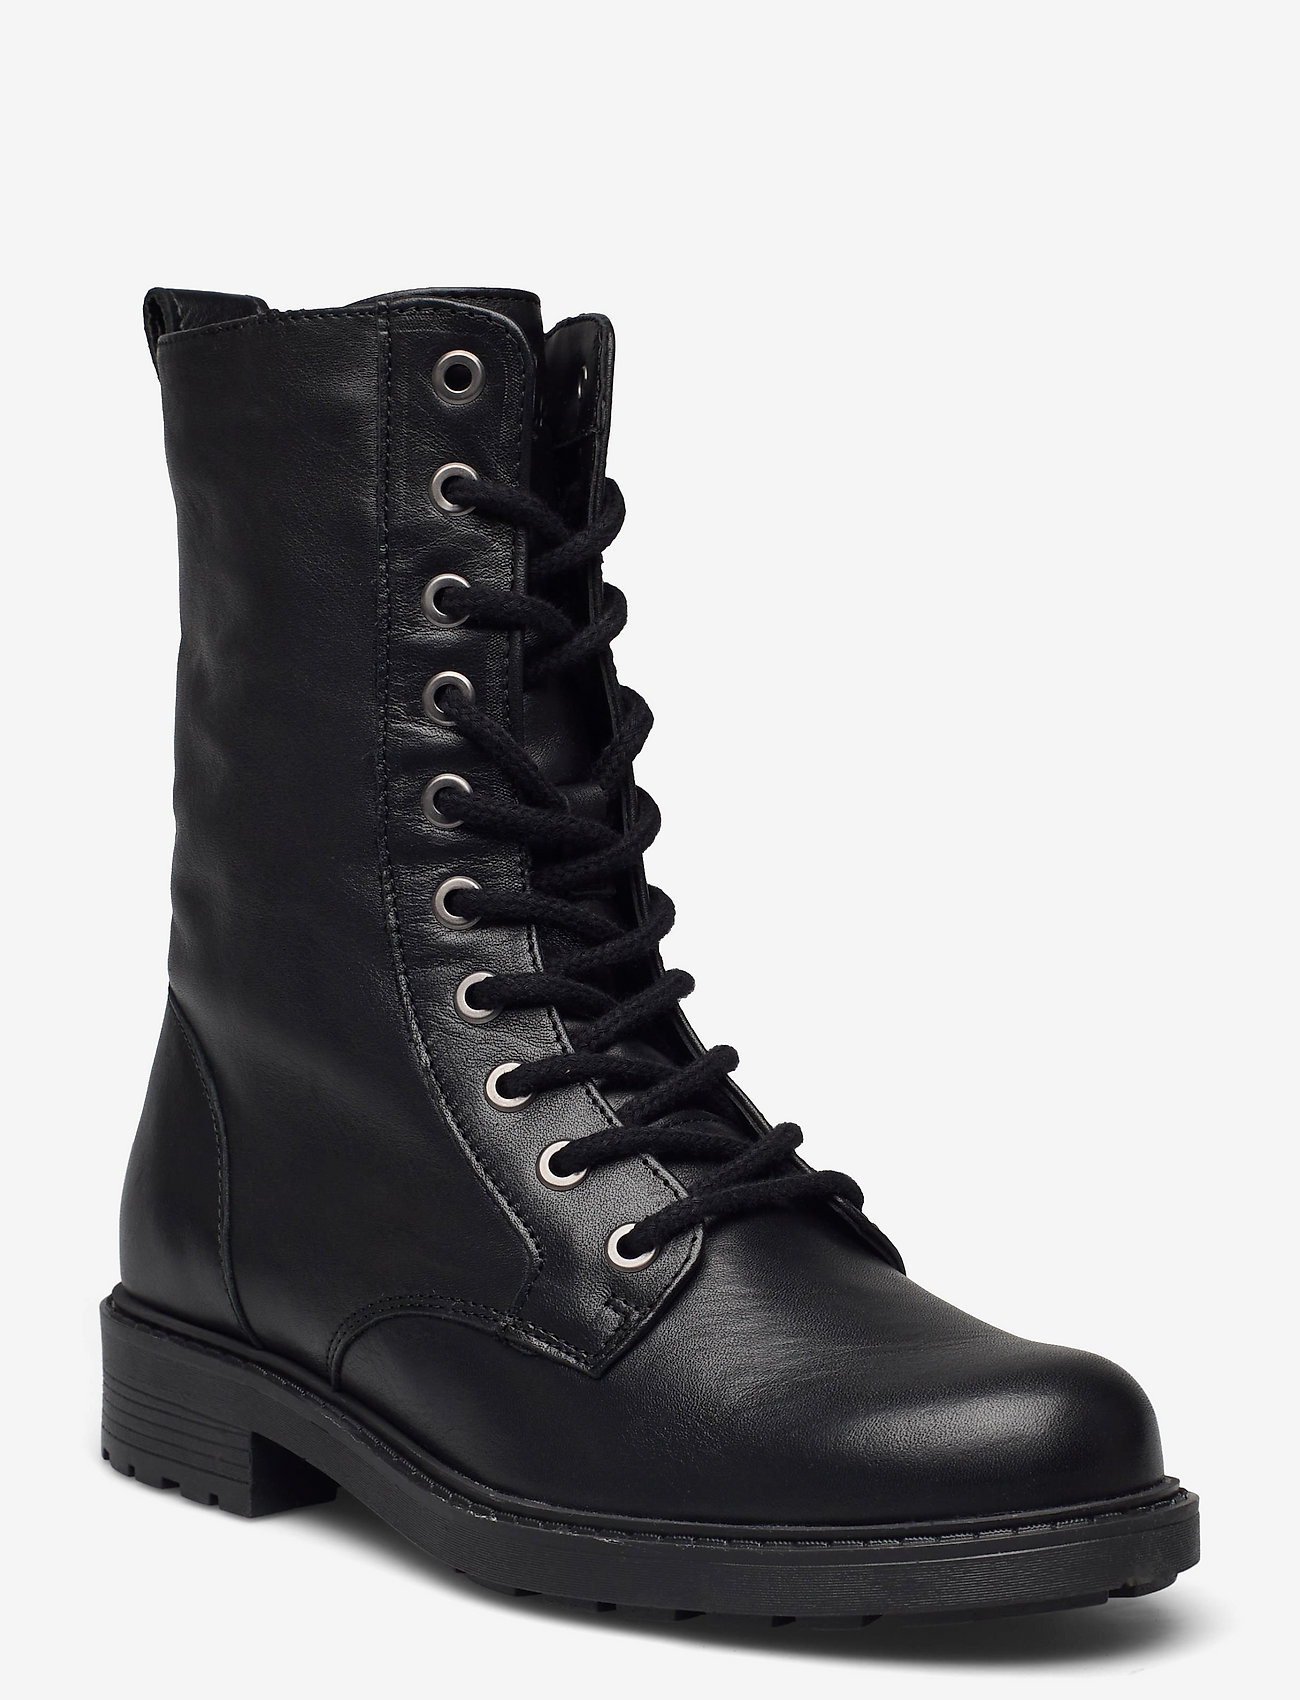 Clarks - Orinoco2 Style - kängor - black leather - 0